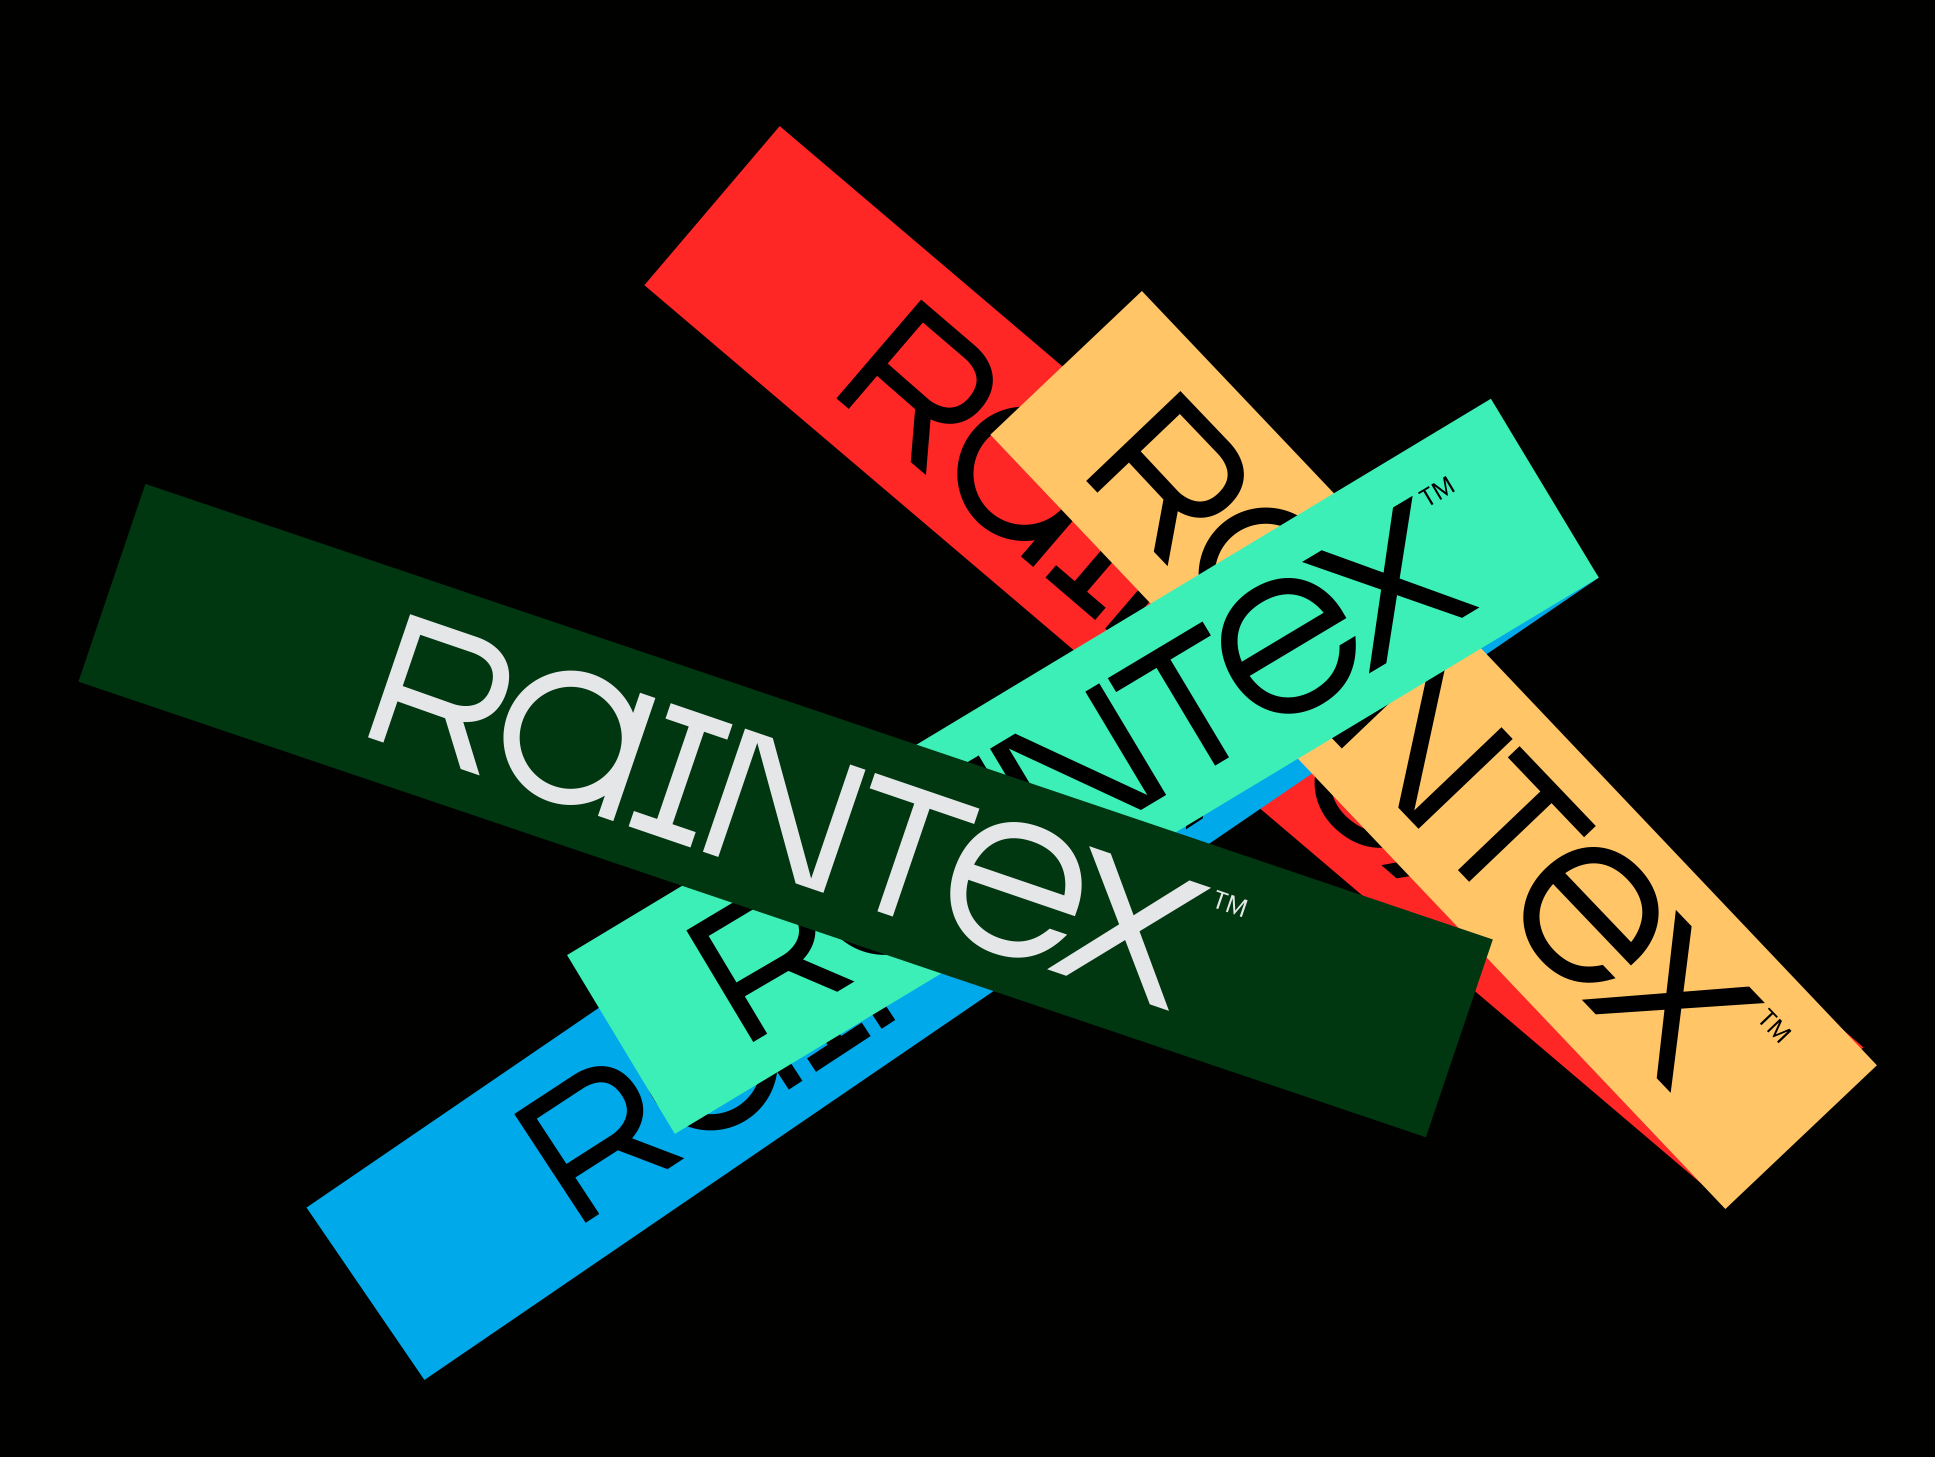 Raintex